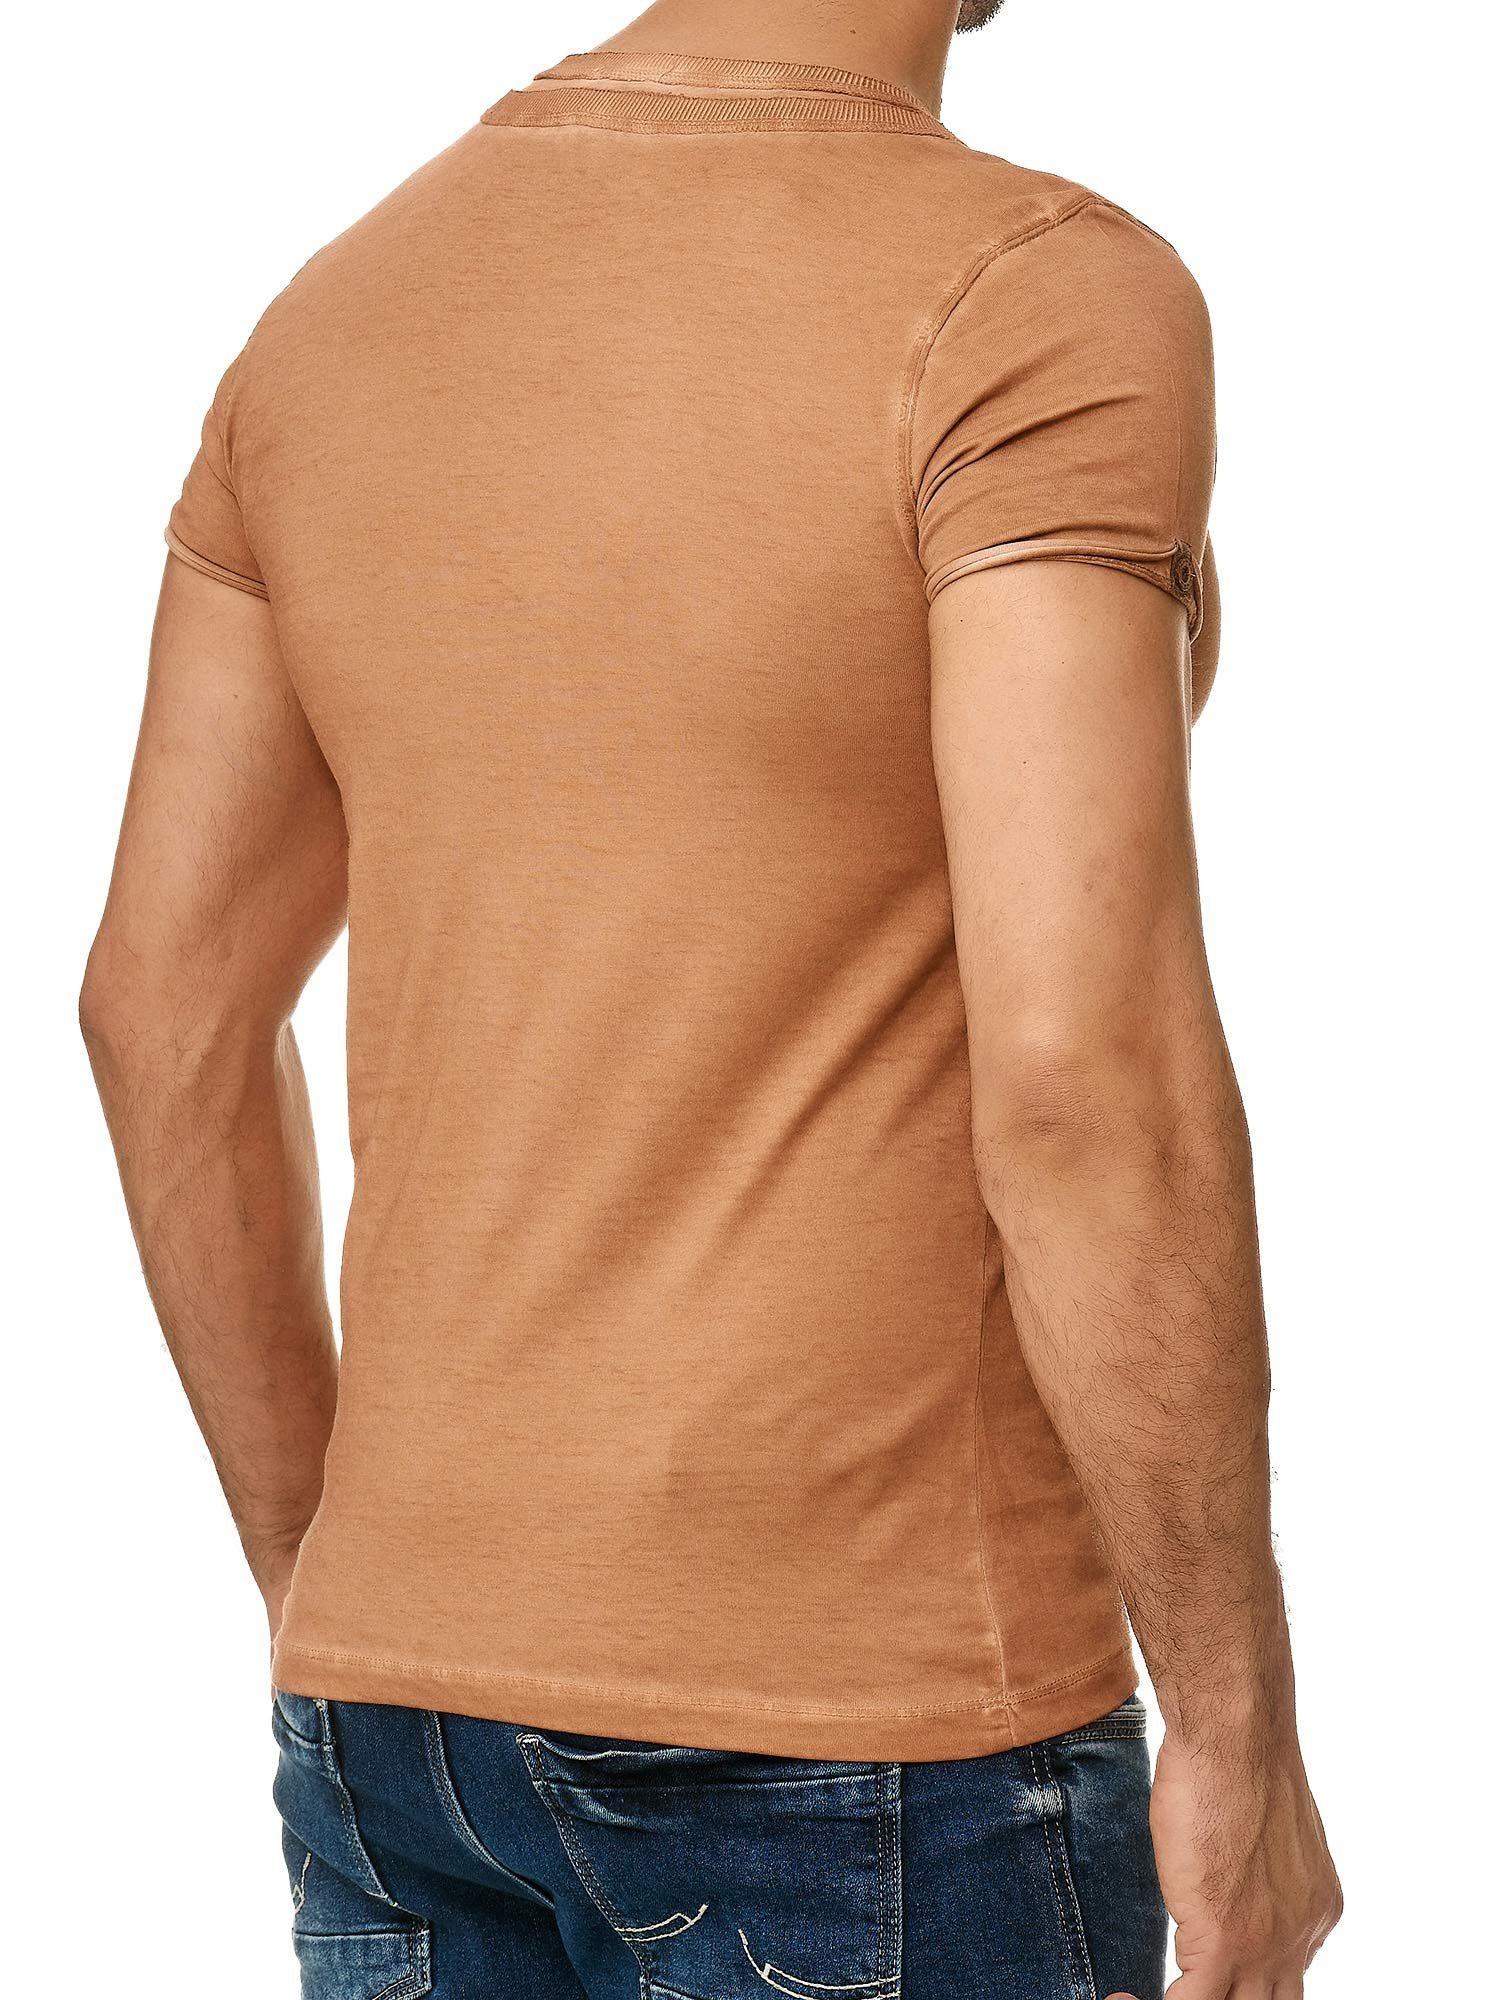 der Schulter T-Shirt Tazzio Ölwaschung und Knopfleiste Kragen in trendiger 4022 camel stylischem mit an